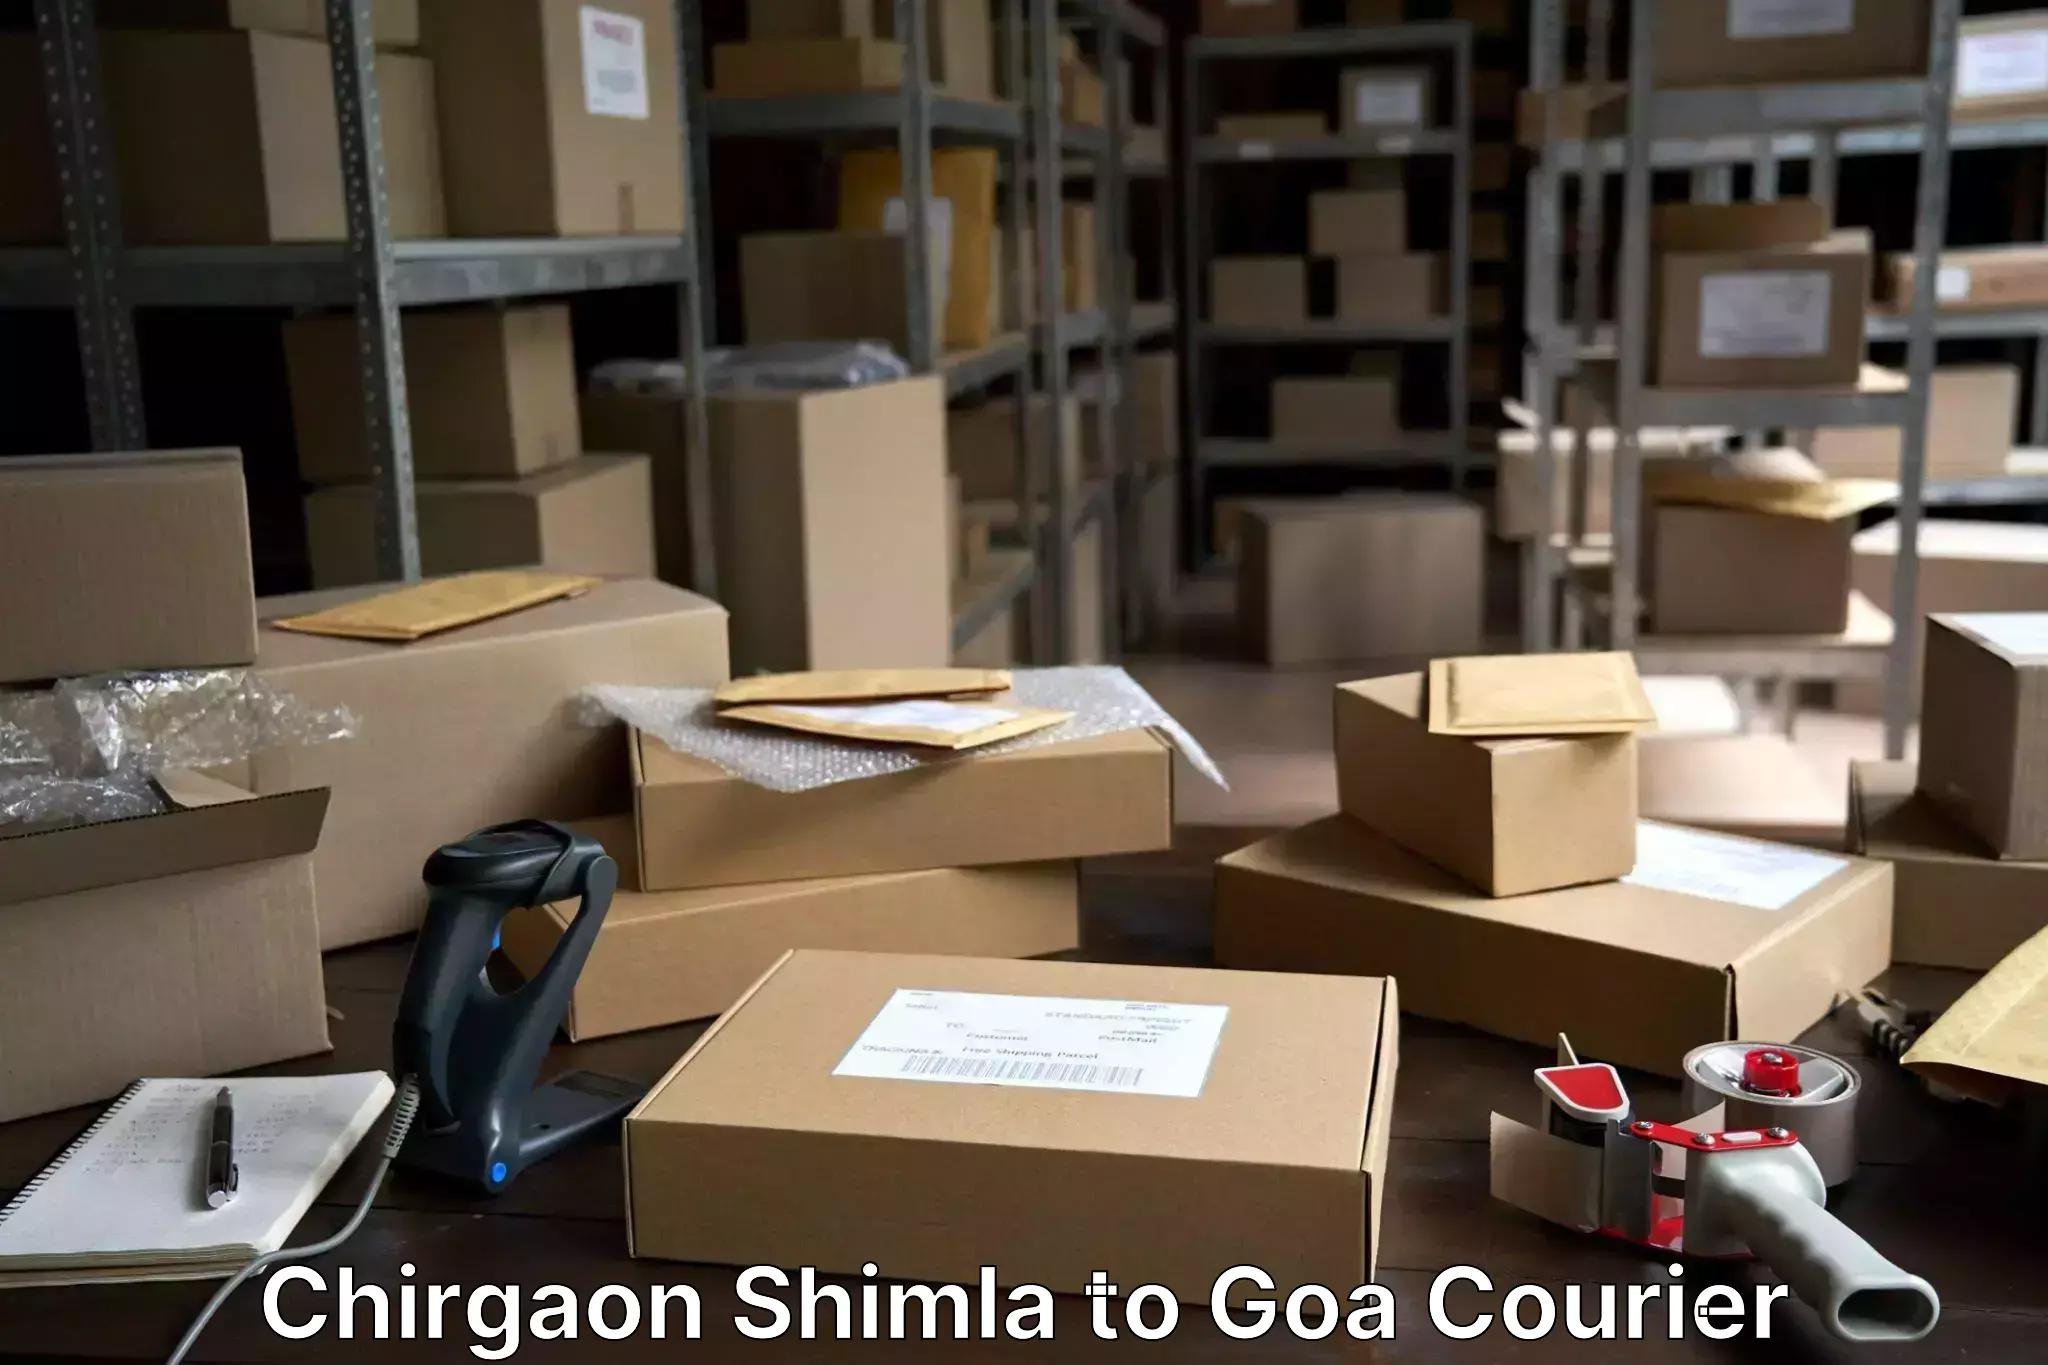 Electronic items luggage shipping Chirgaon Shimla to Goa